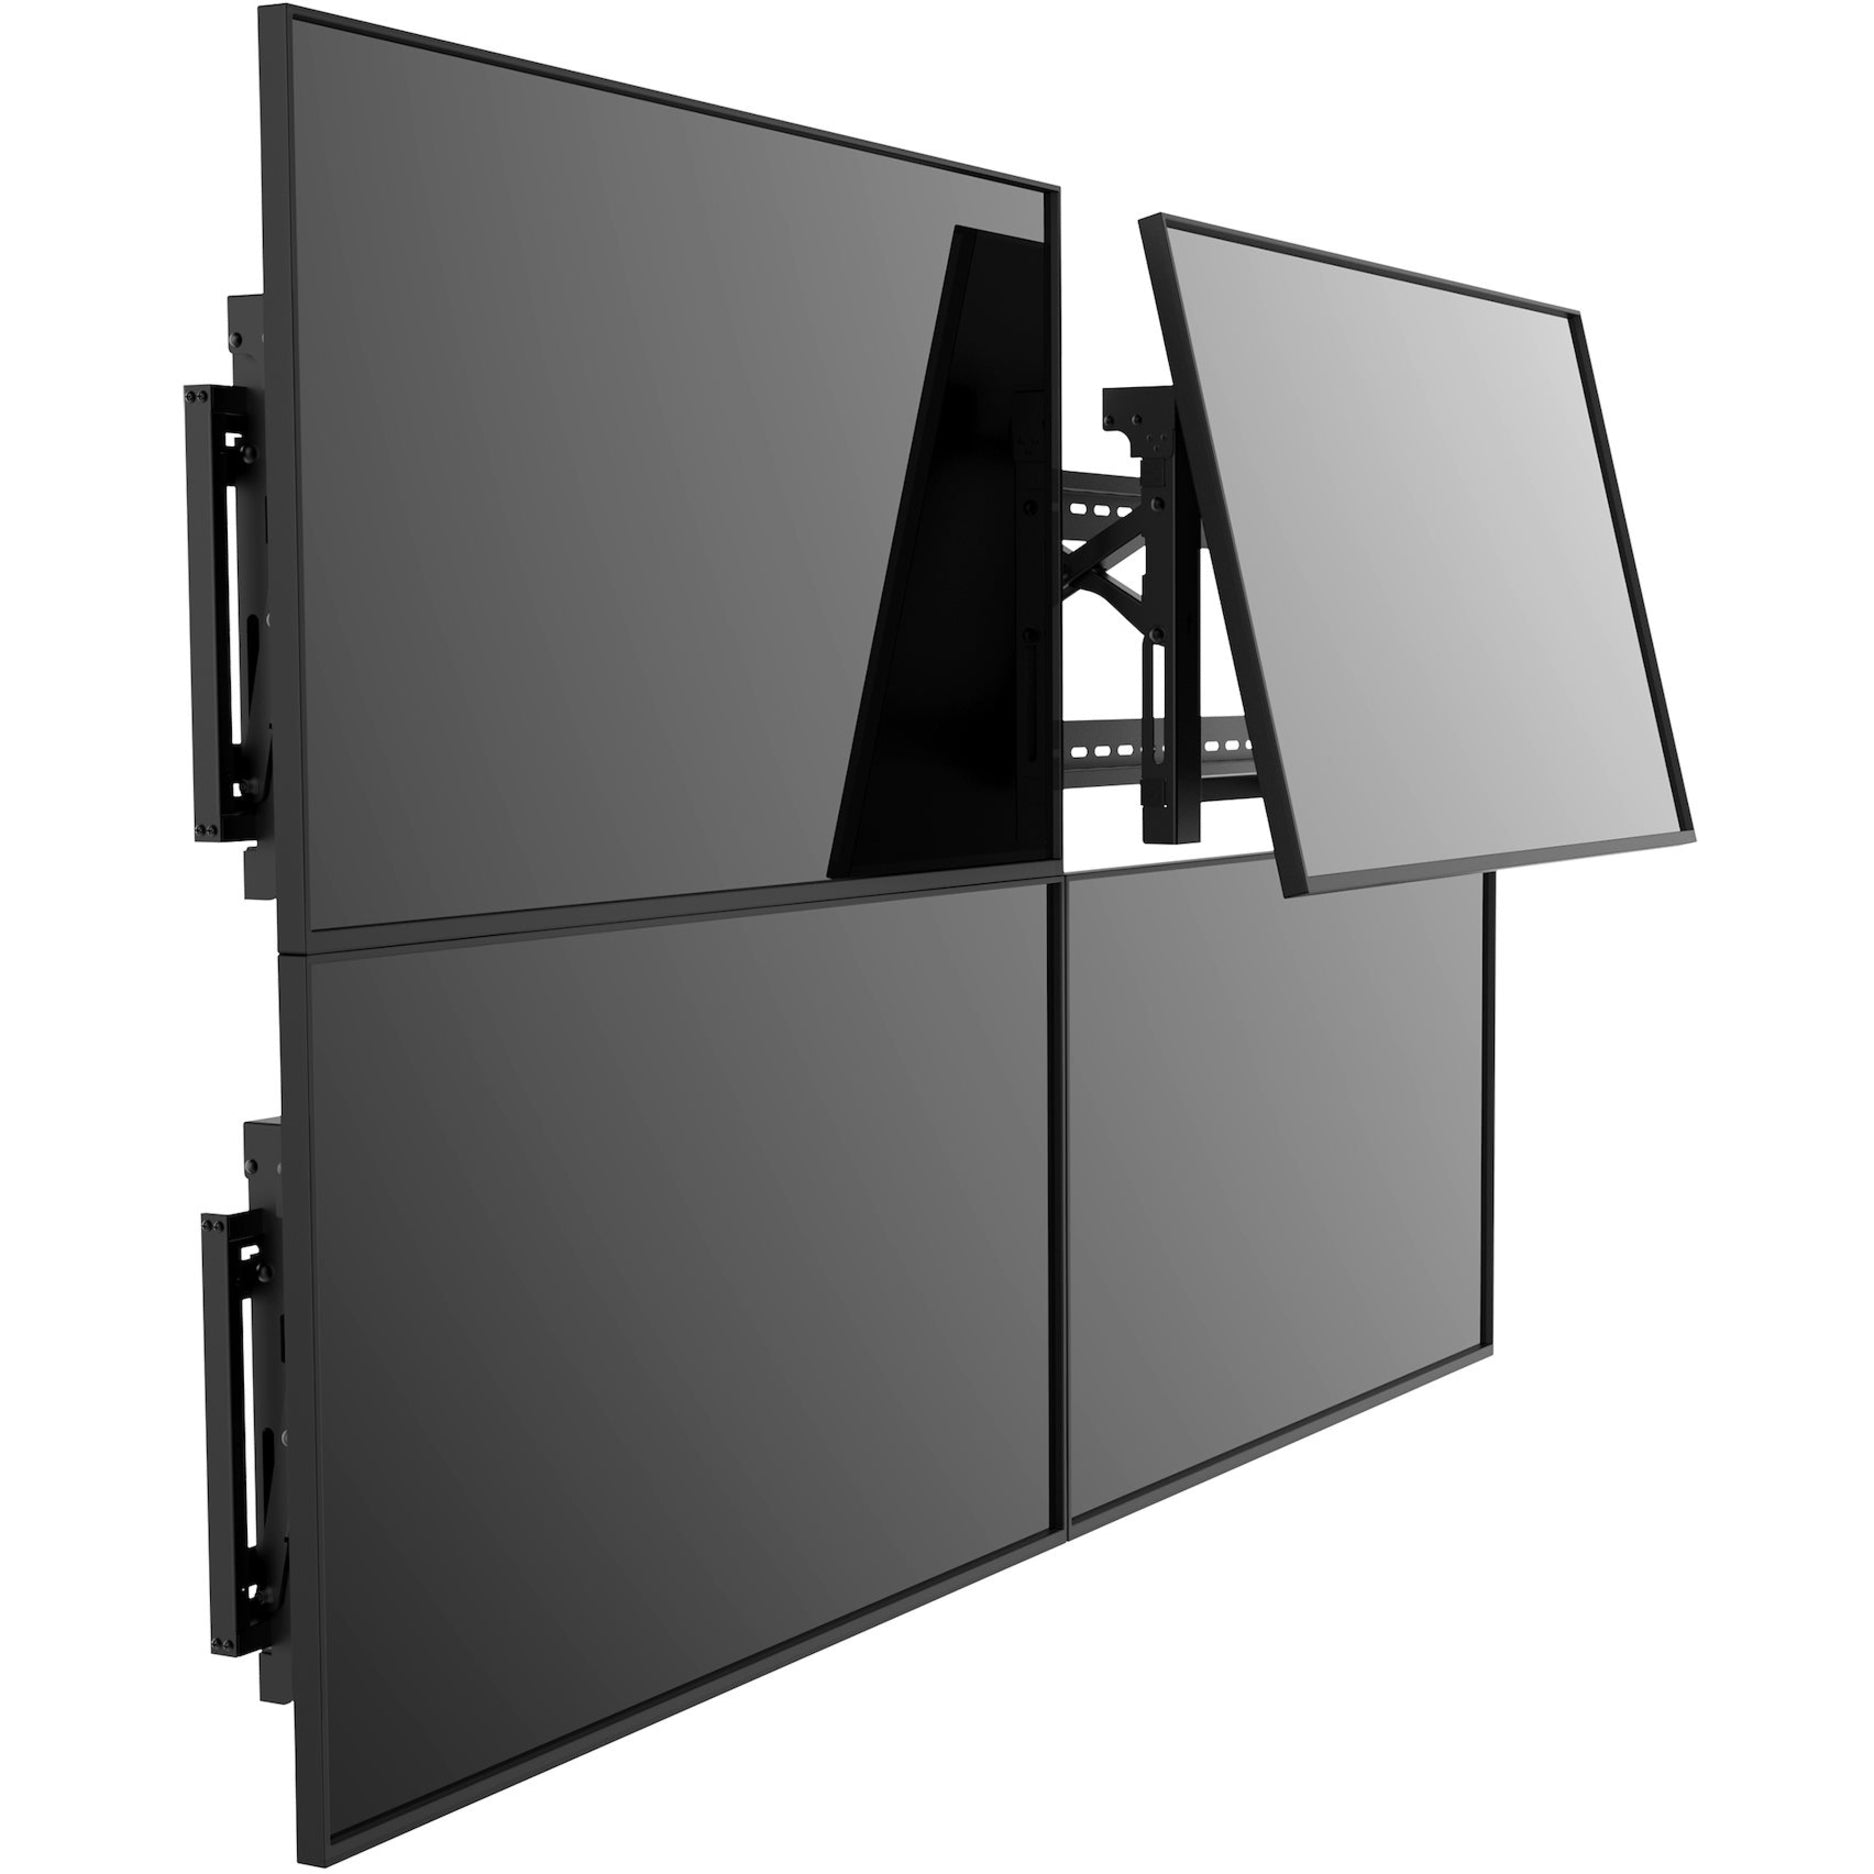 StarTech.com VIDWALLMNT Video Wall Mount - For 45in to 70in VESA Mount Displays, Anti-Theft, Heavy Duty Steel